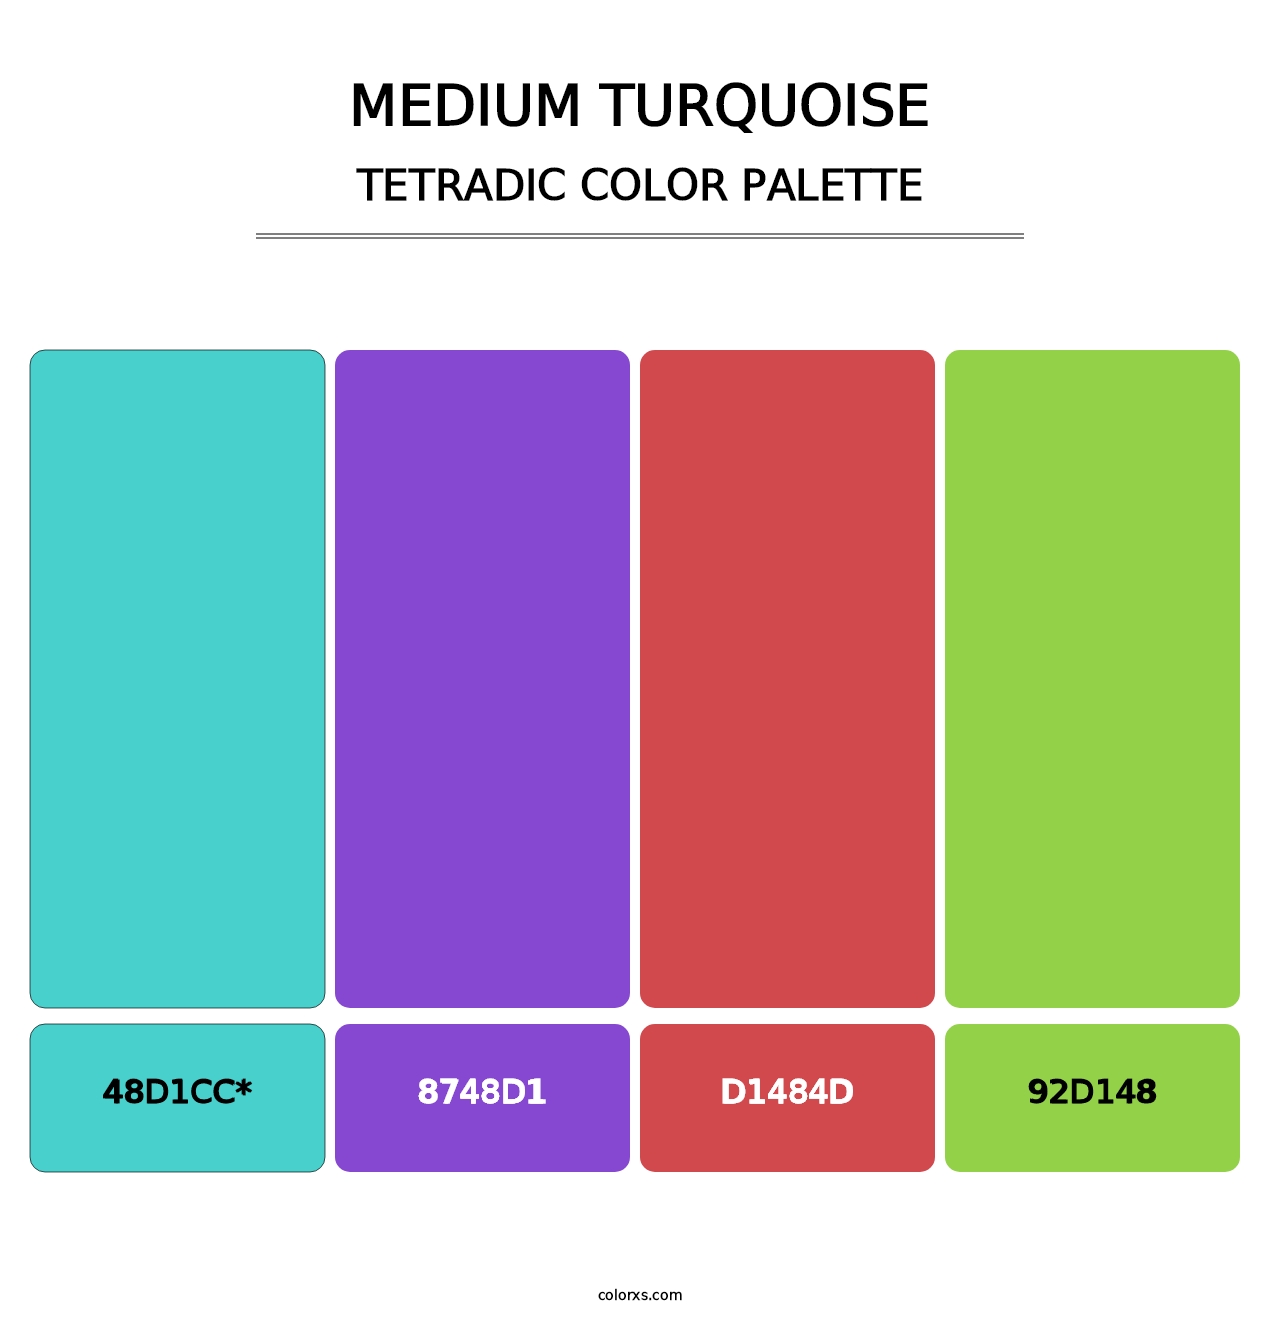 Medium Turquoise - Tetradic Color Palette